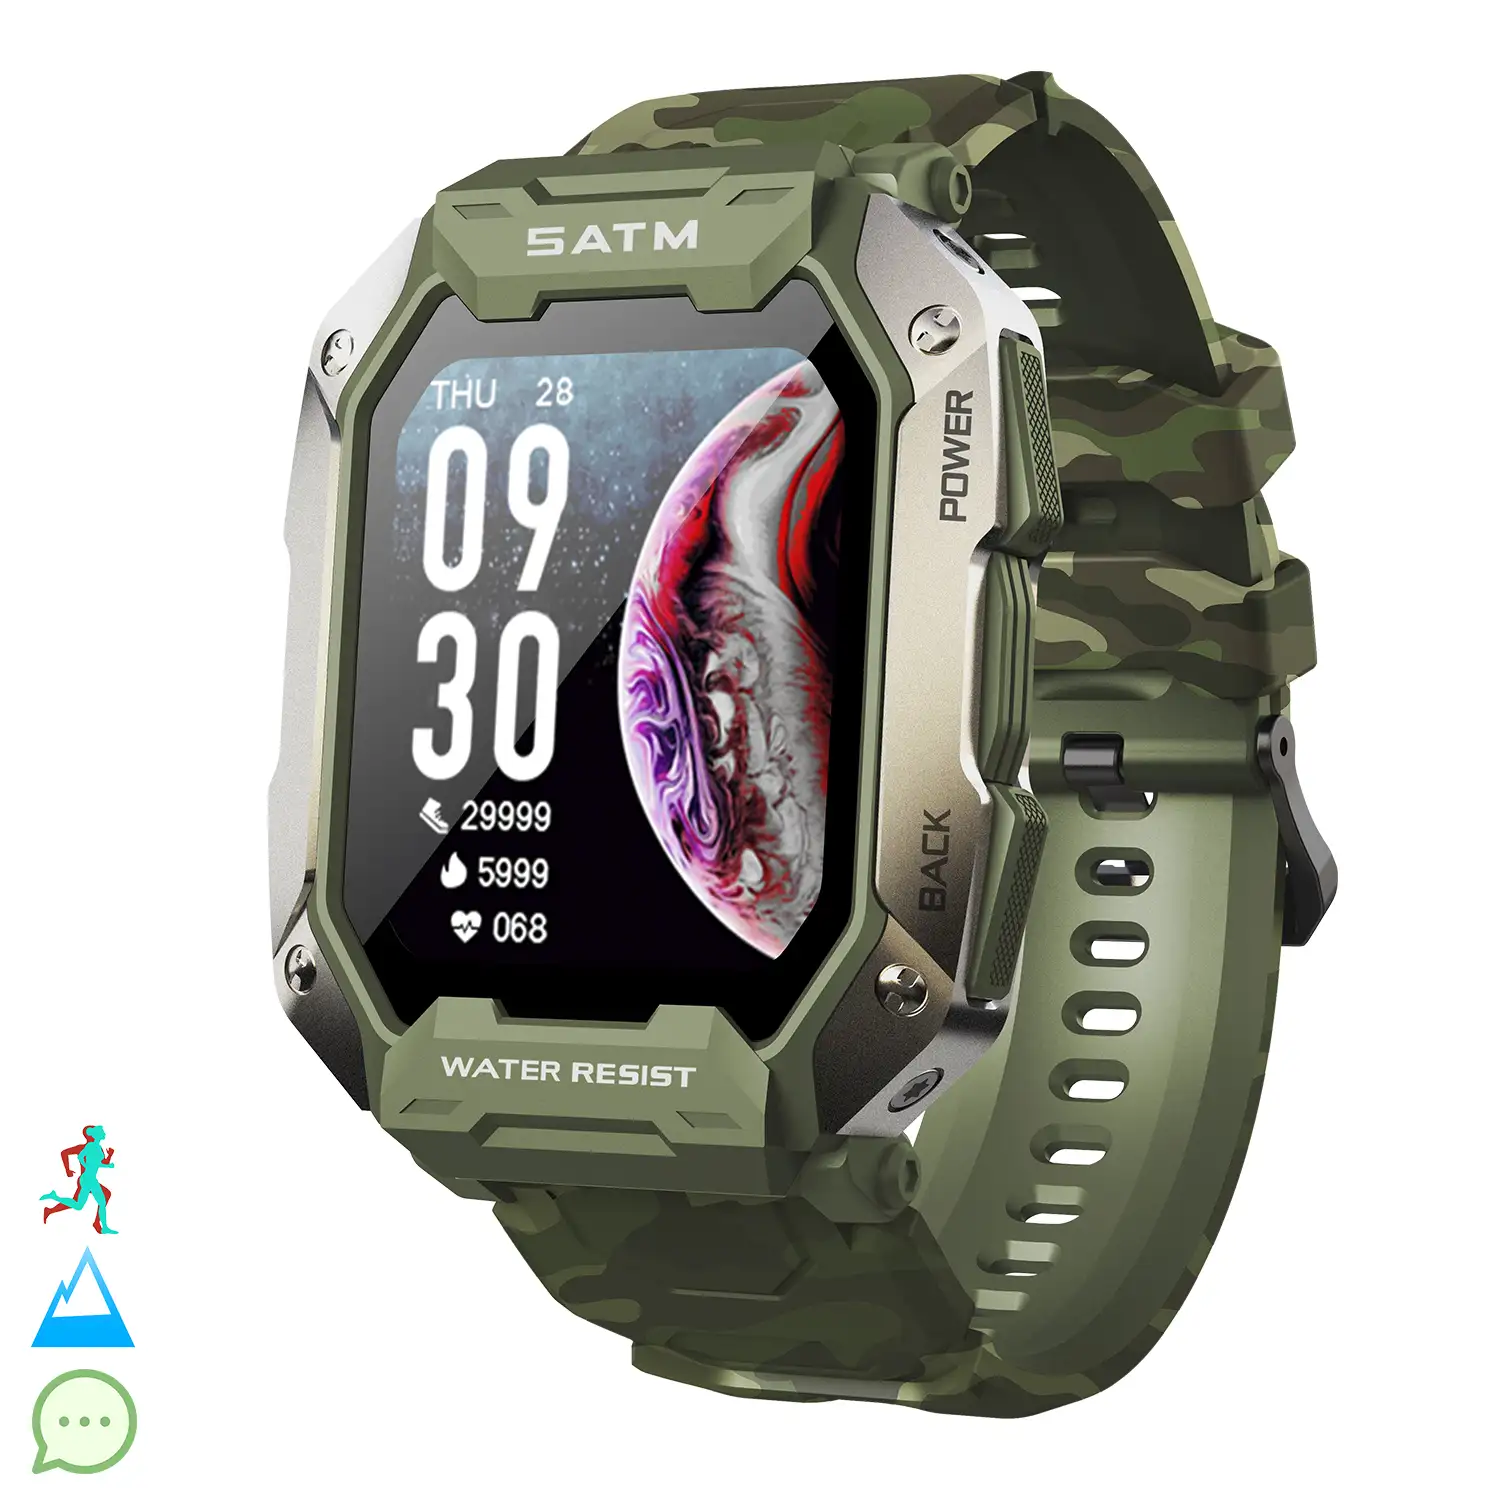 Smartwatch C20 sumergible, pantalla de 1,7 pulgadas y 24 modos deportivos. Monitor cardiaco y de O2.